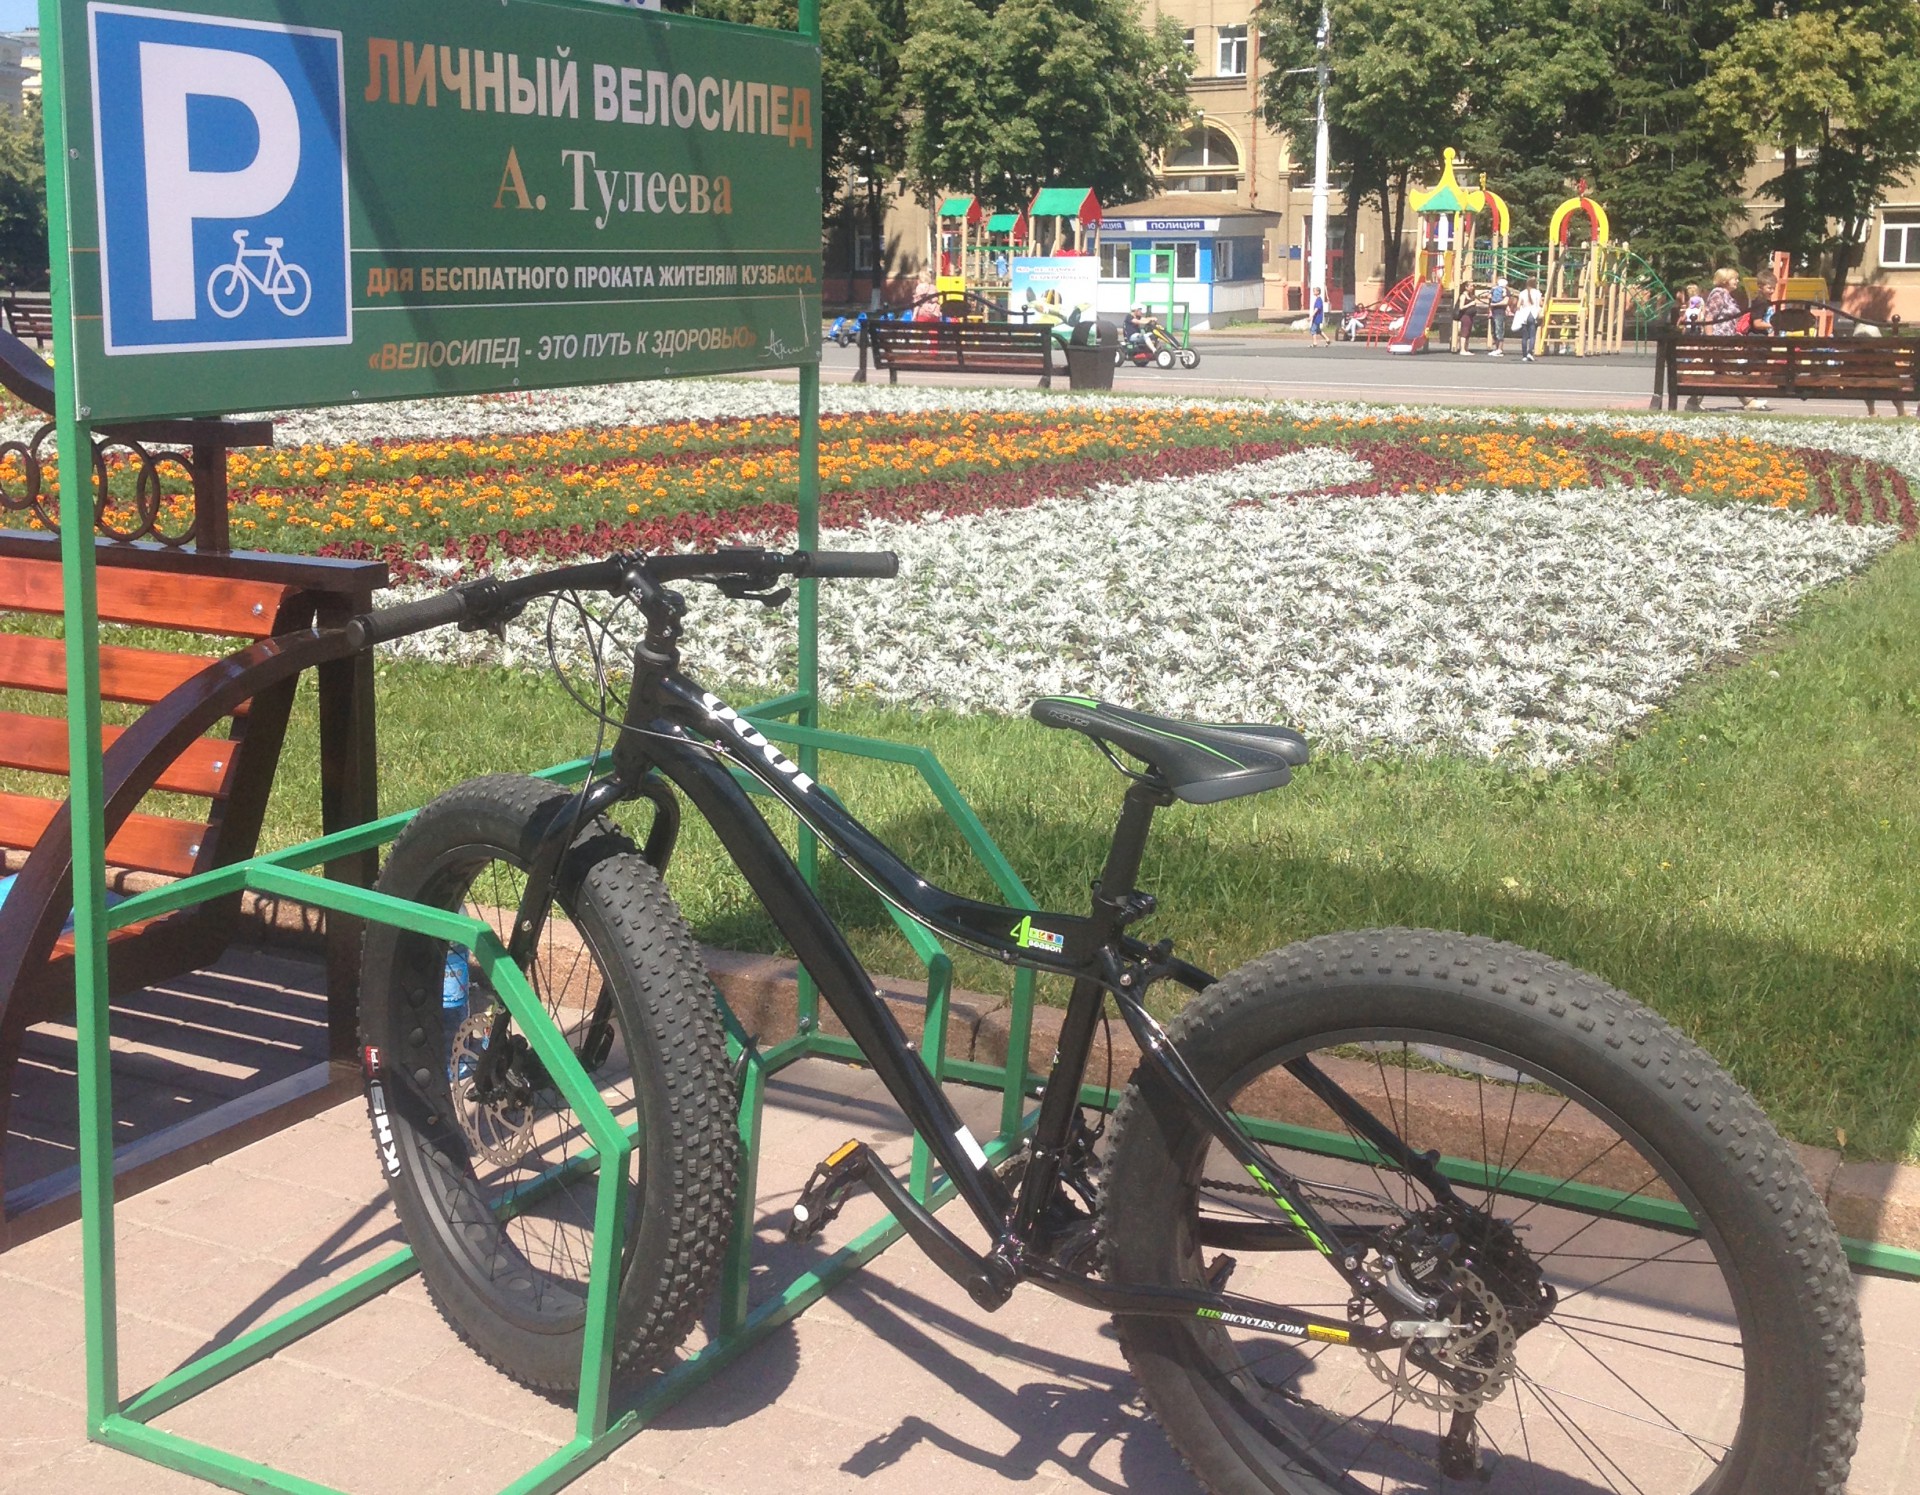 Купить велосипед в кемерово. Велосипеды в Кемерово. Велосипеды напрокат Кемерово. Кемерово Тулеев велосипеды дарит. Метраж для велосипеда.